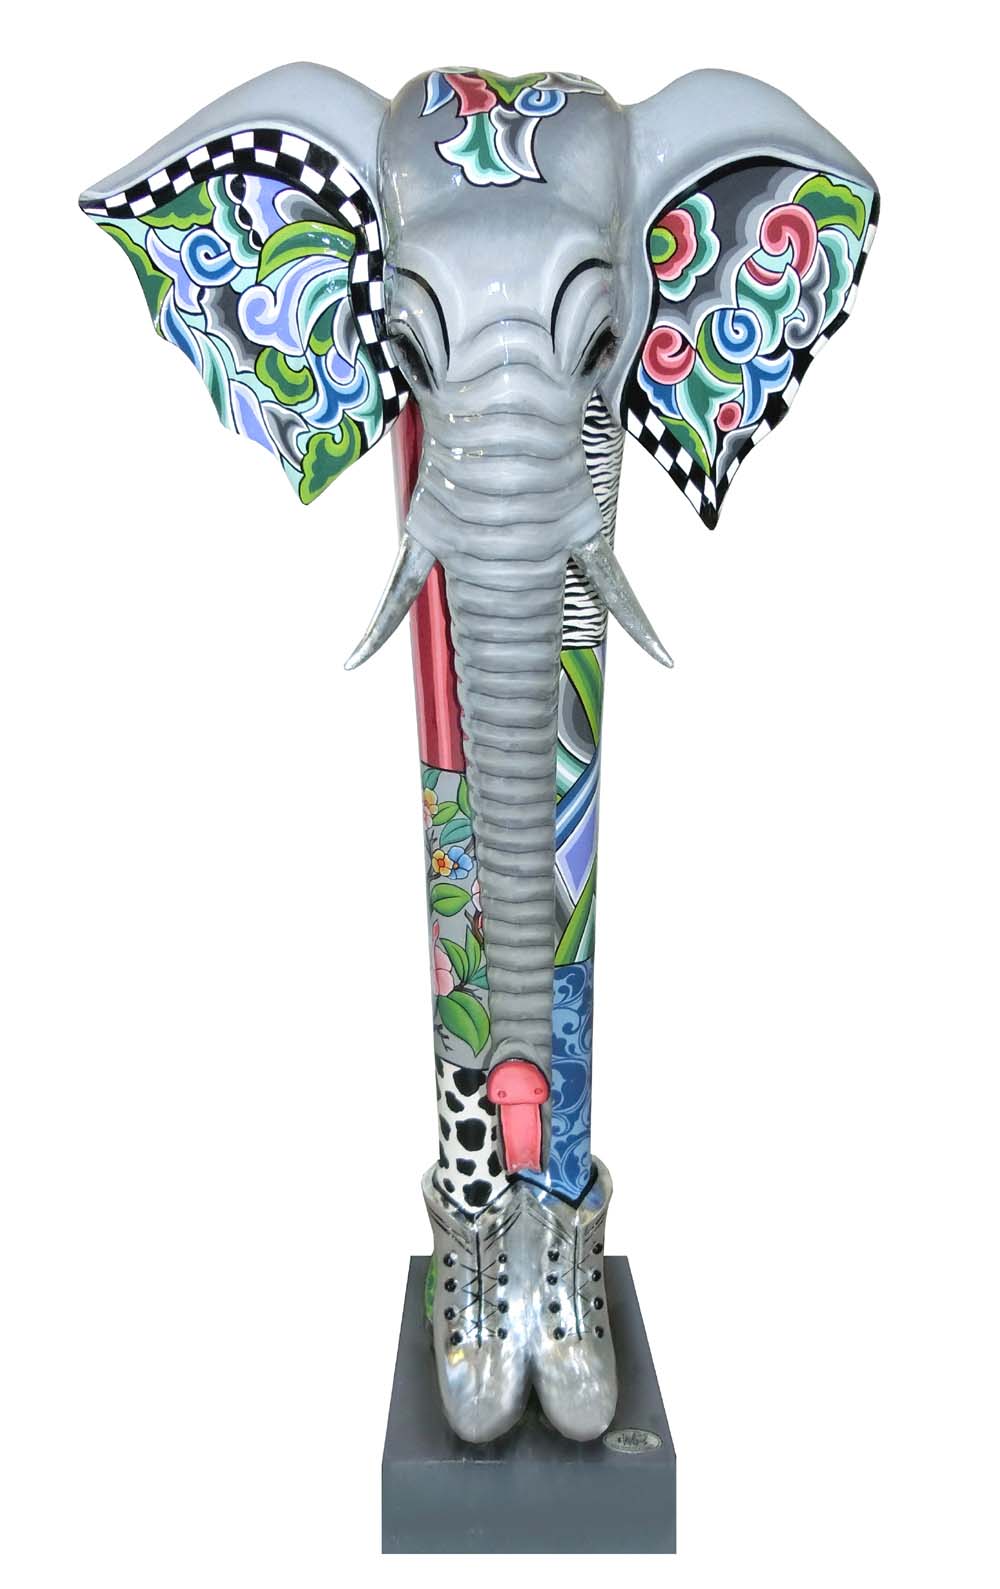 toms-drag-art-elefant-elephant-alexander-xxl-102166